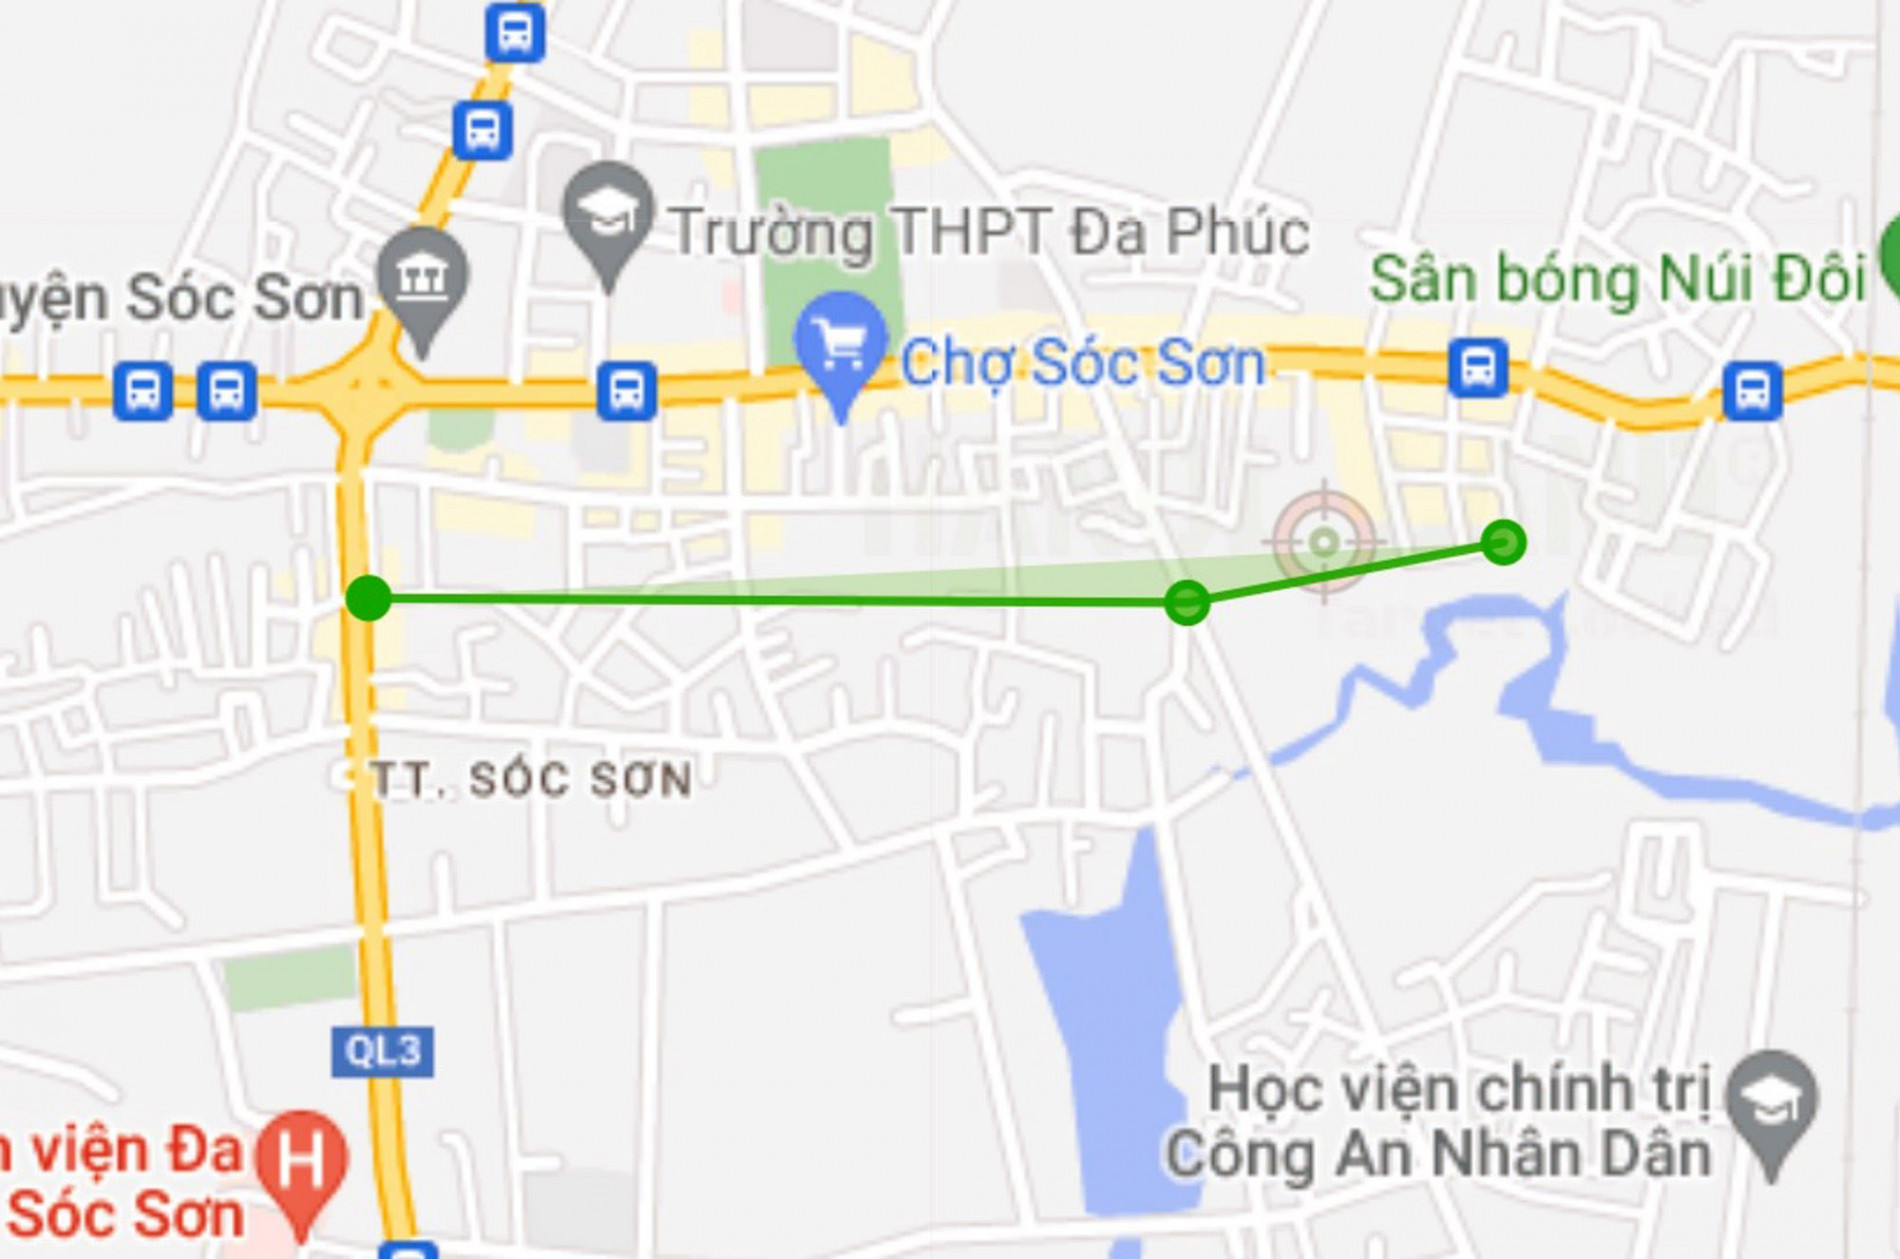 Đường sẽ mở theo quy hoạch ở thị trấn Sóc Sơn, Sóc Sơn, Hà Nội (phần 3)